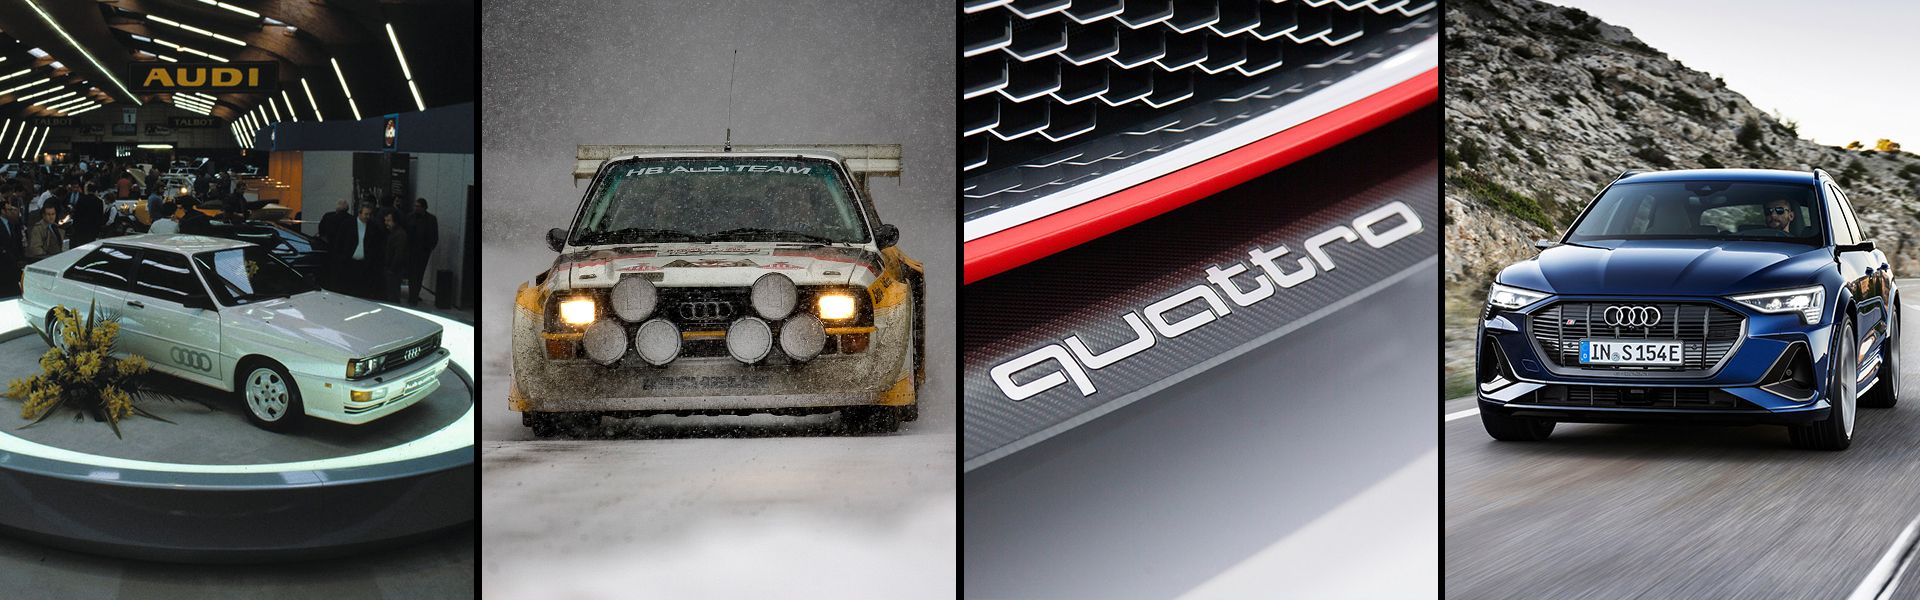 The exterior evolution of the Audi quattro 